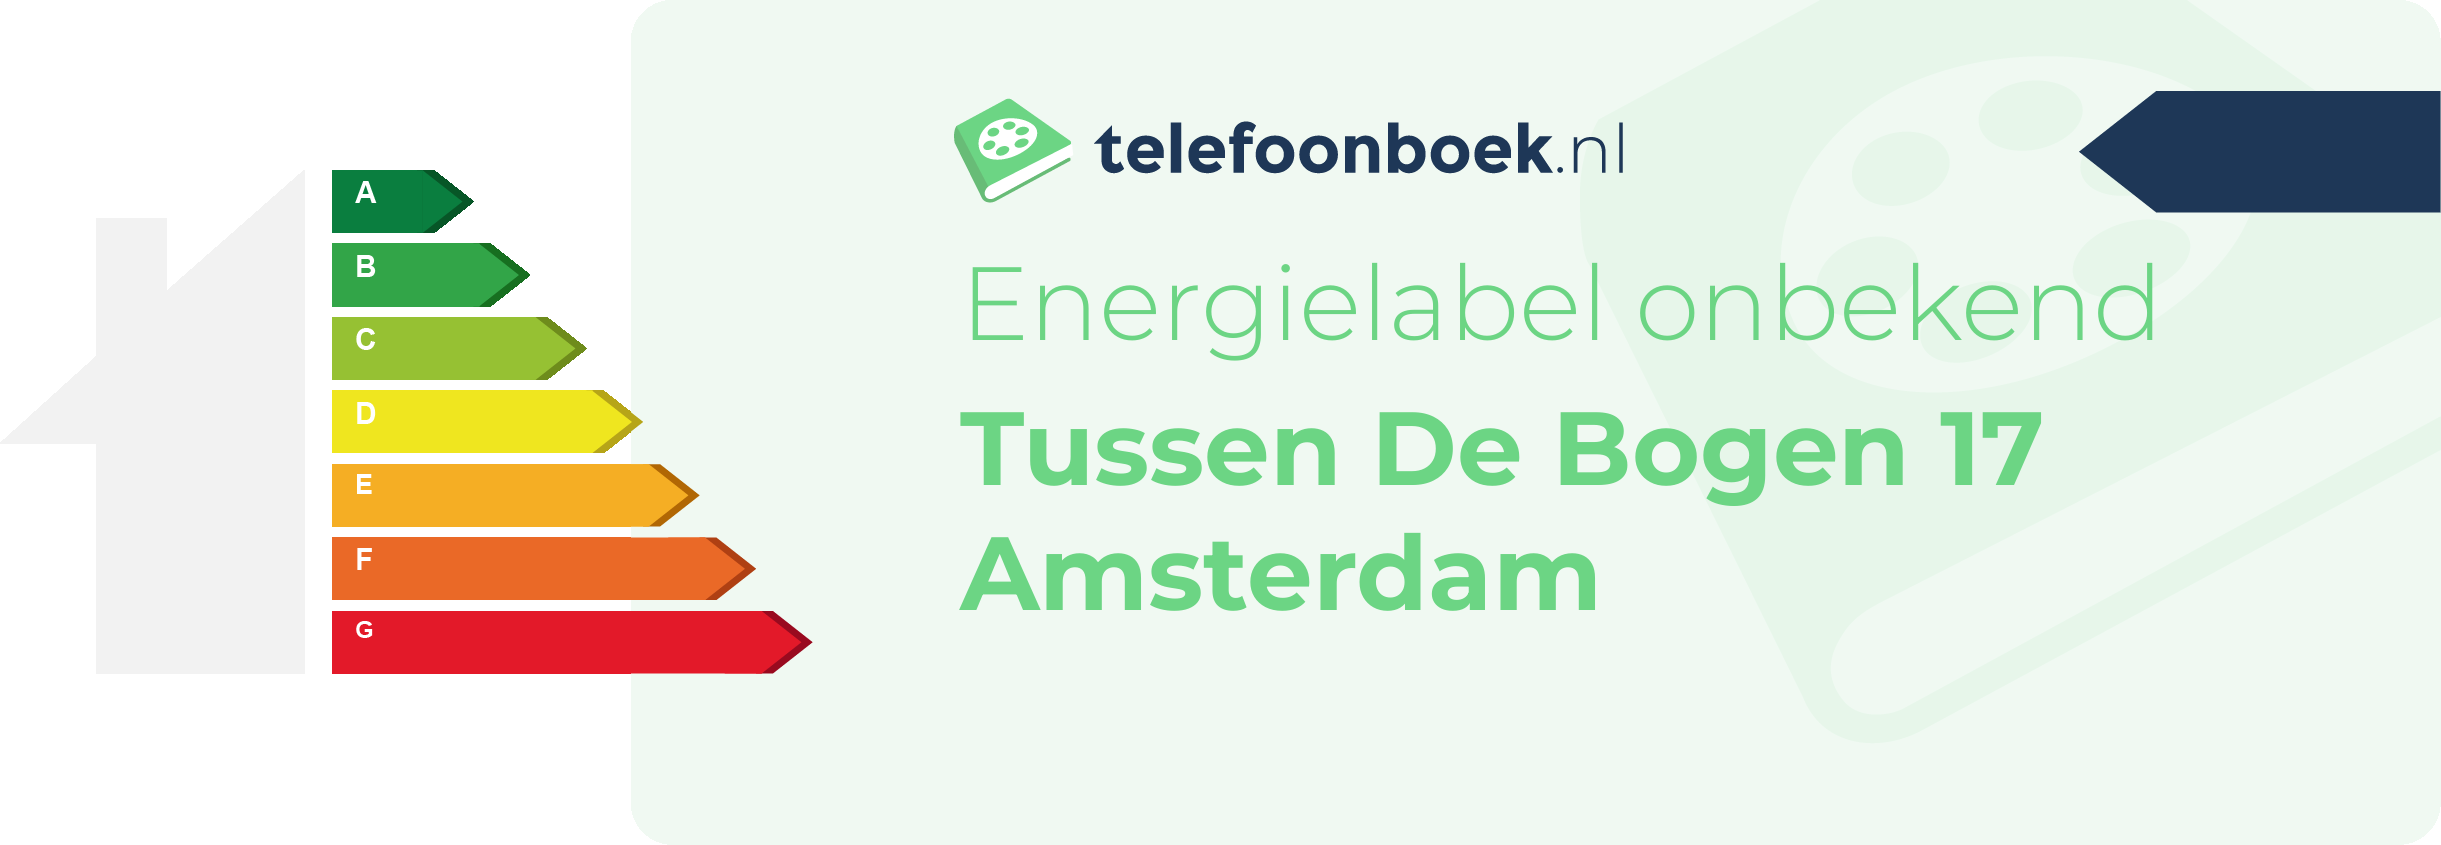 Energielabel Tussen De Bogen 17 Amsterdam